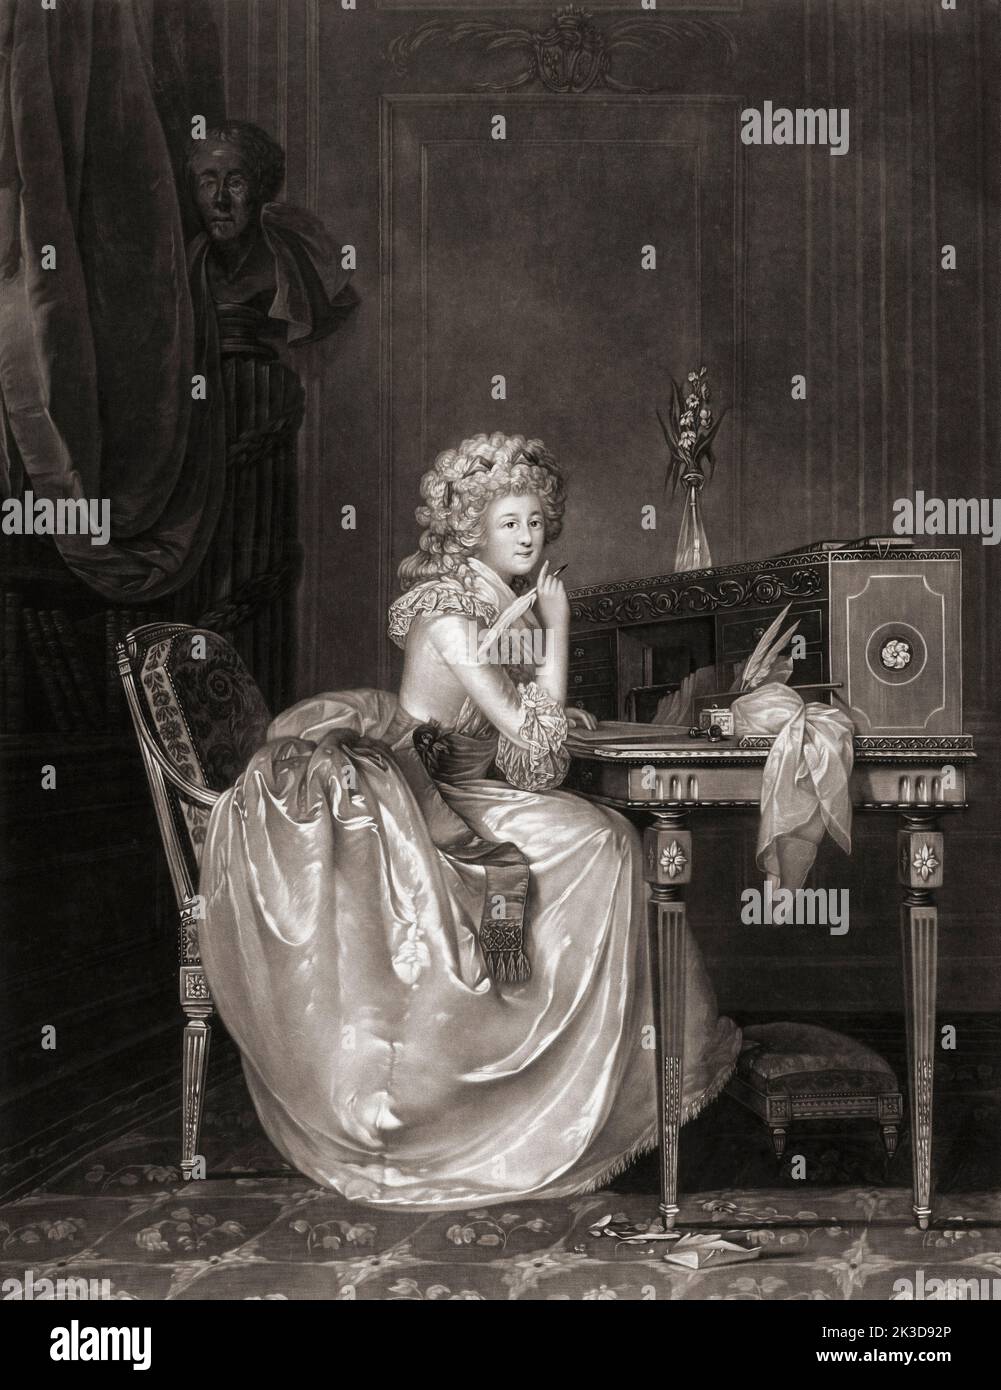 Marie-Louise Thérèse von Savoy-Carignan, Princesse de Lamballe, 1749 - 1792. Intime Gefährtin und Dame, die auf Marie Antoinette wartet. Sie wurde während der Französischen Revolution ermordet. Stockfoto